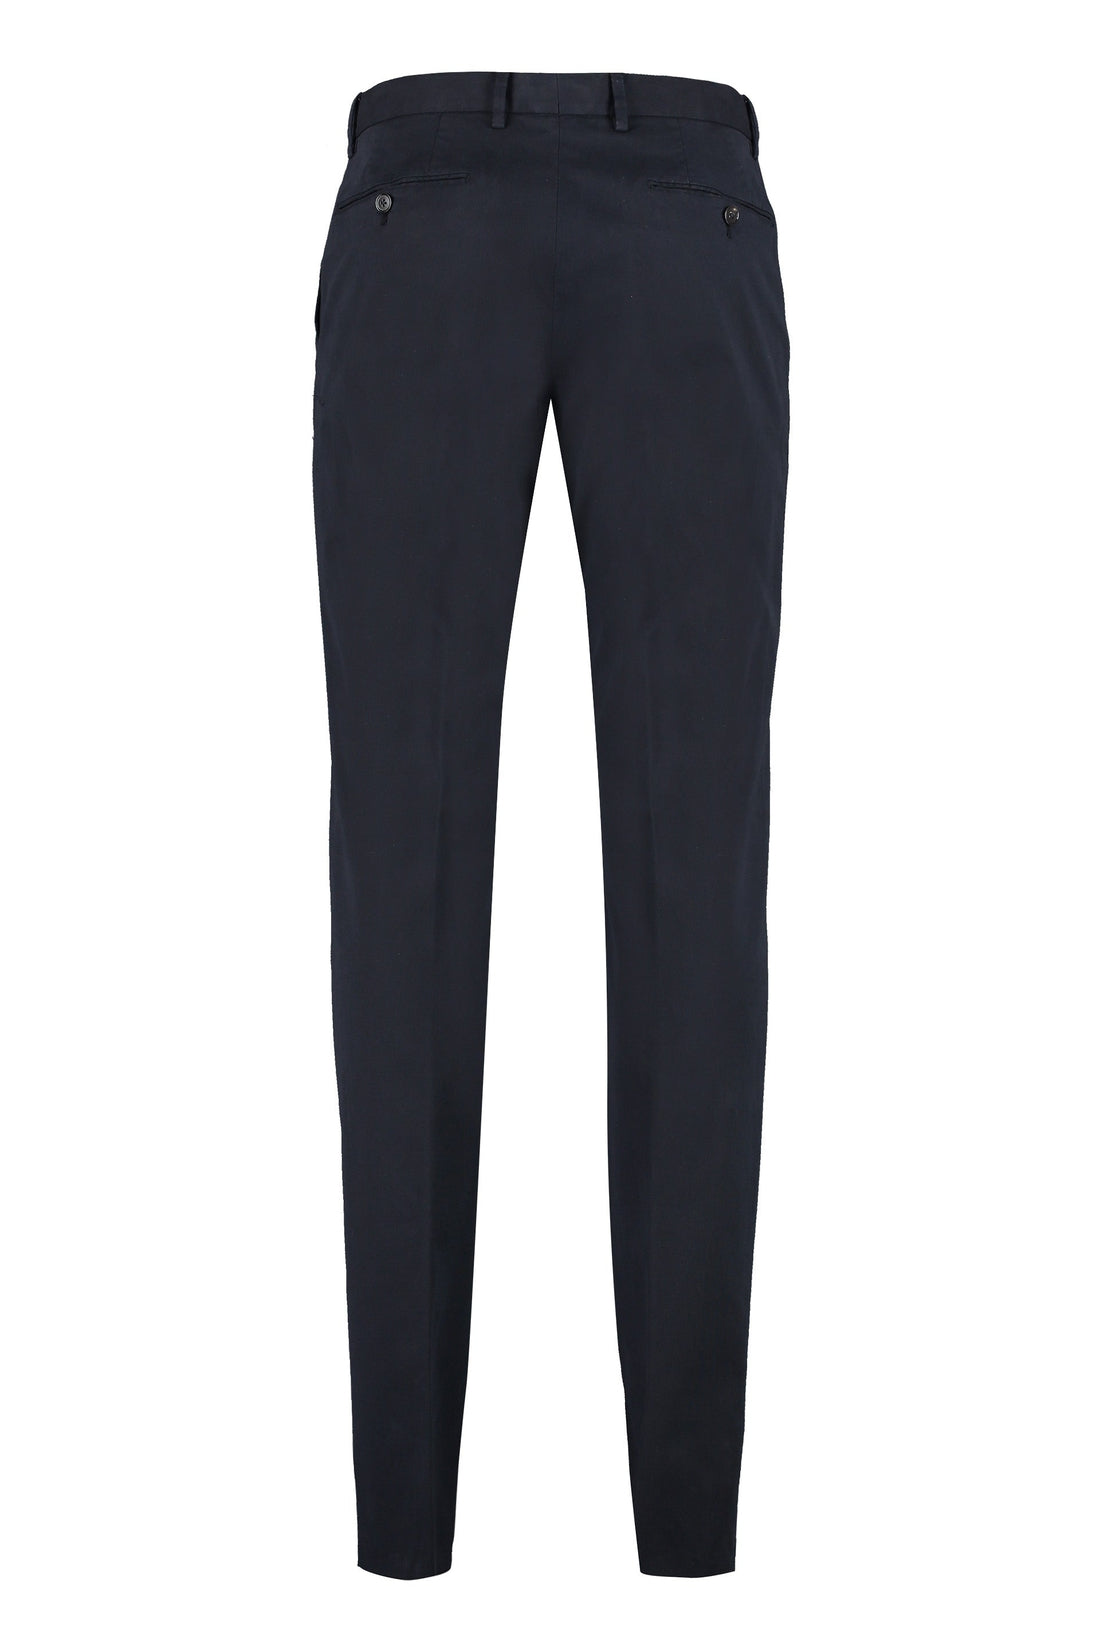 Zegna-OUTLET-SALE-Cotton trousers-ARCHIVIST